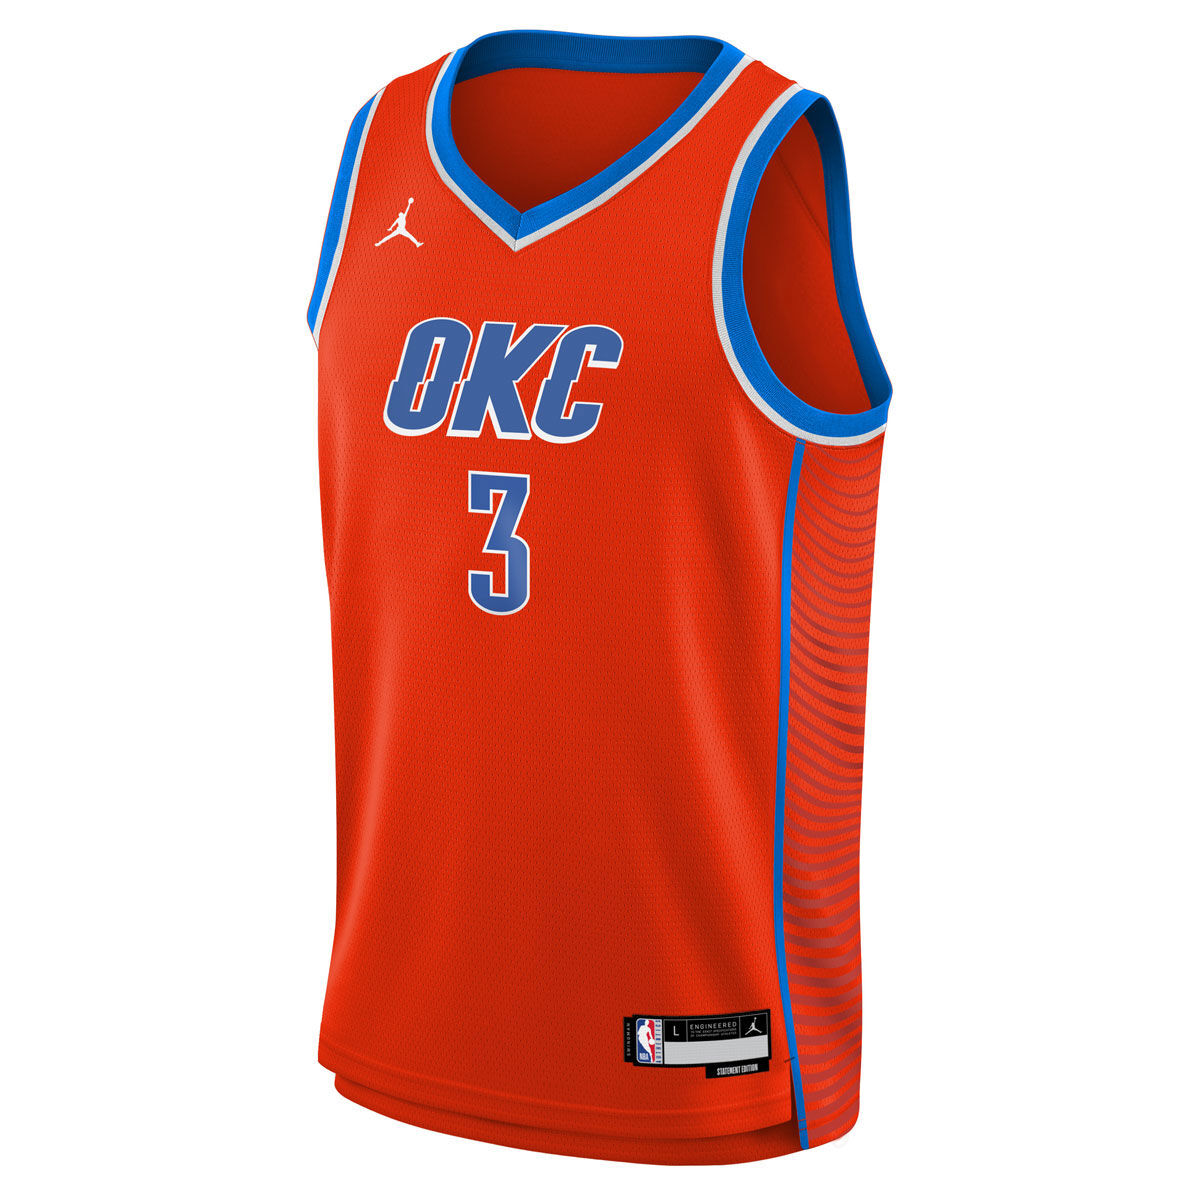 Nike Youth Oklahoma City Thunder Blue Long Sleeve Practice Shirt, Kids, Large